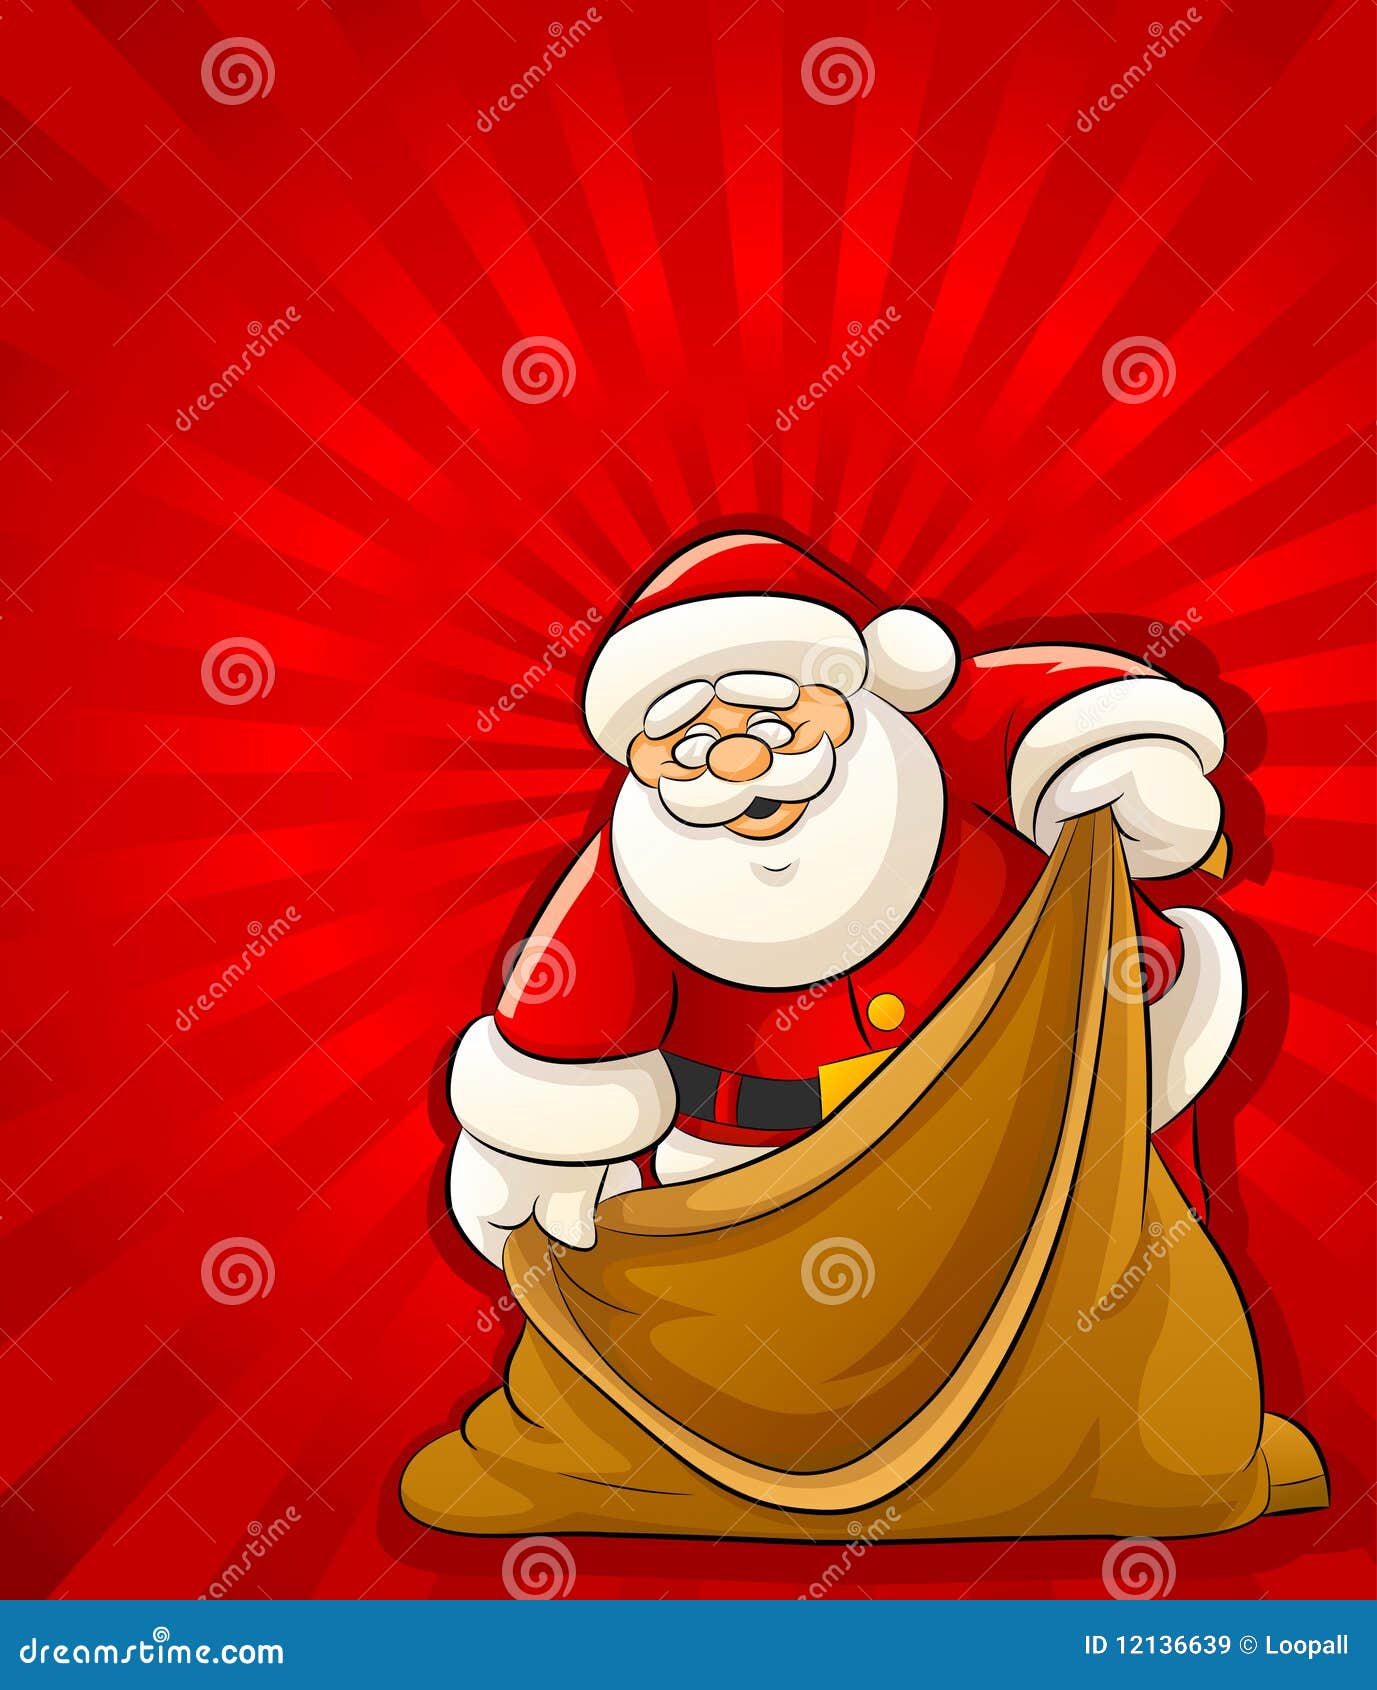 Sacco Per Regali Di Natale.Il Babbo Natale Con Il Sacco Vuoto Per I Regali Di Natale Illustrazione Vettoriale Illustrazione Di Vuoto Sacchetto 12136639